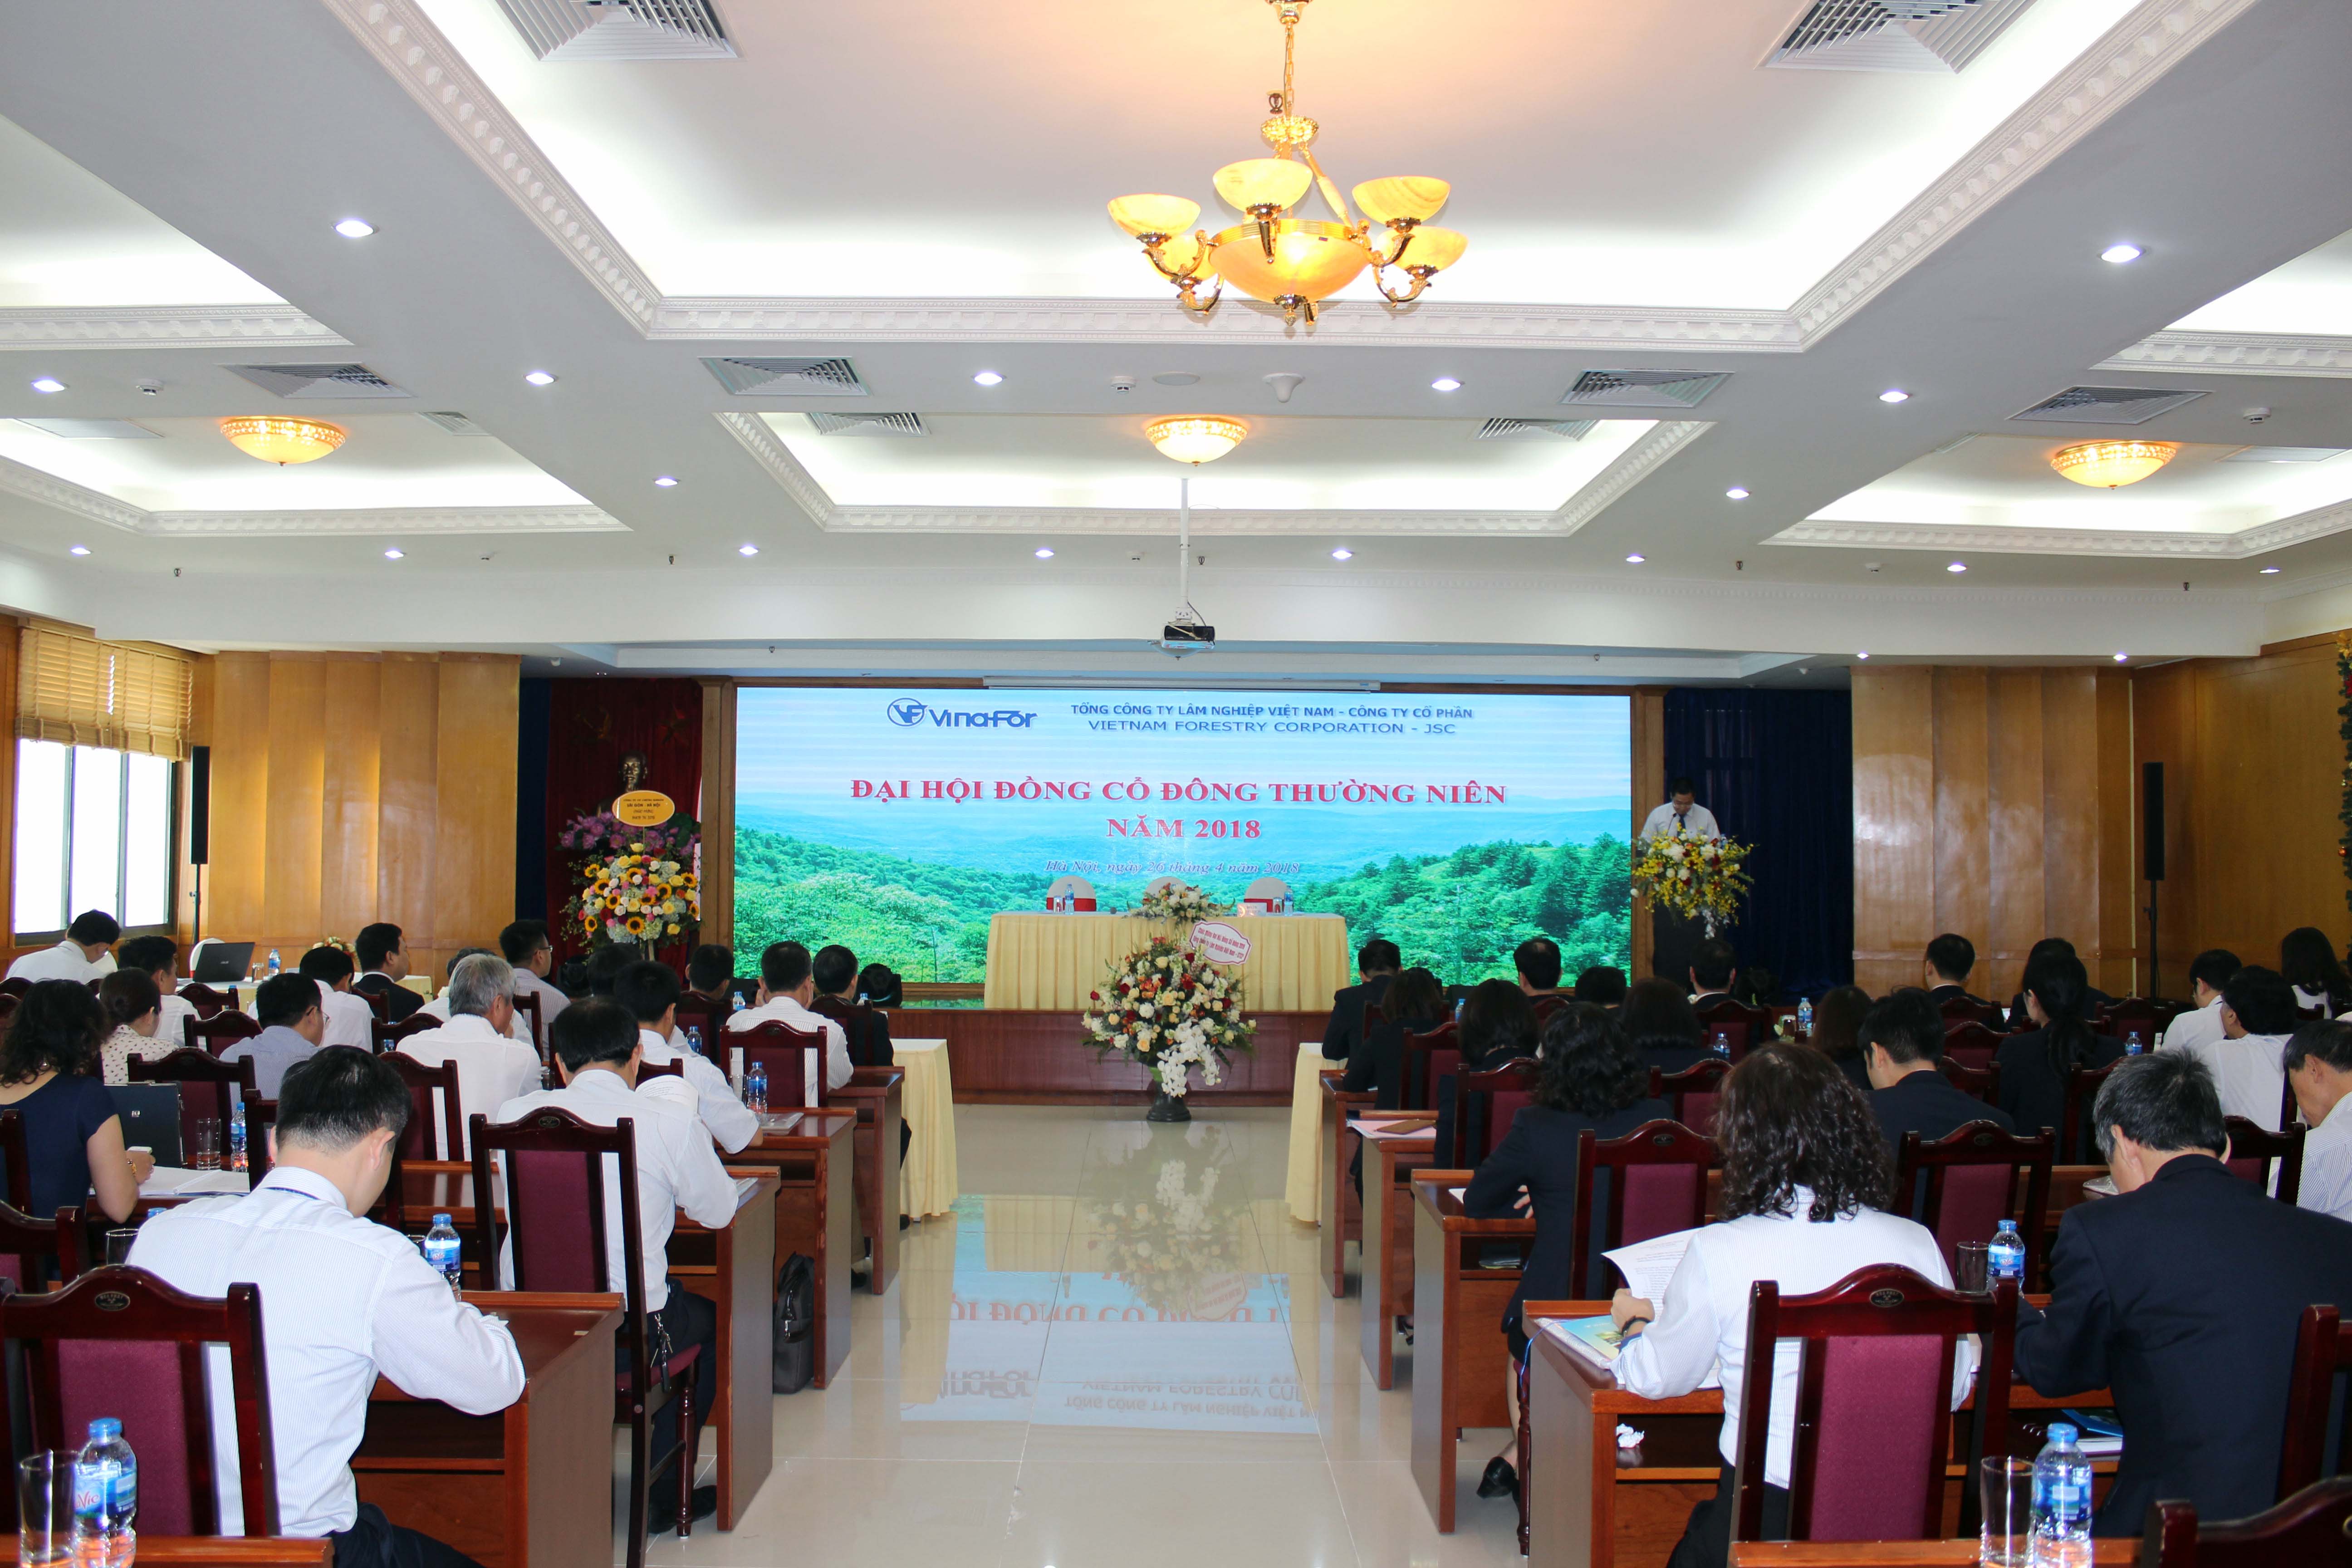 Tổng công ty Lâm nghiệp Việt Nam - CTCP tổ chức thành công Đại hội đồng Cổ đông thường niên năm 2018